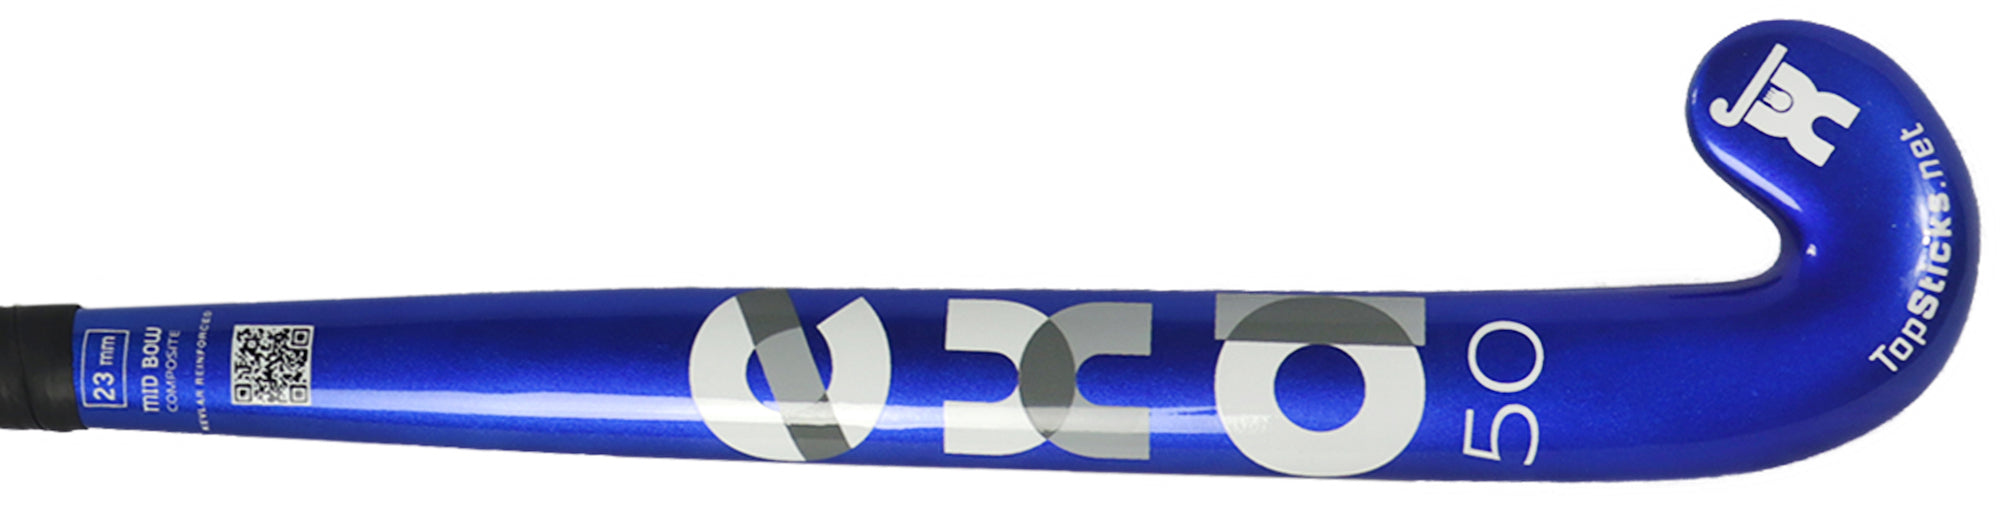 Exa 50 Mid Bow Shiny Blue Field Hockey Stick